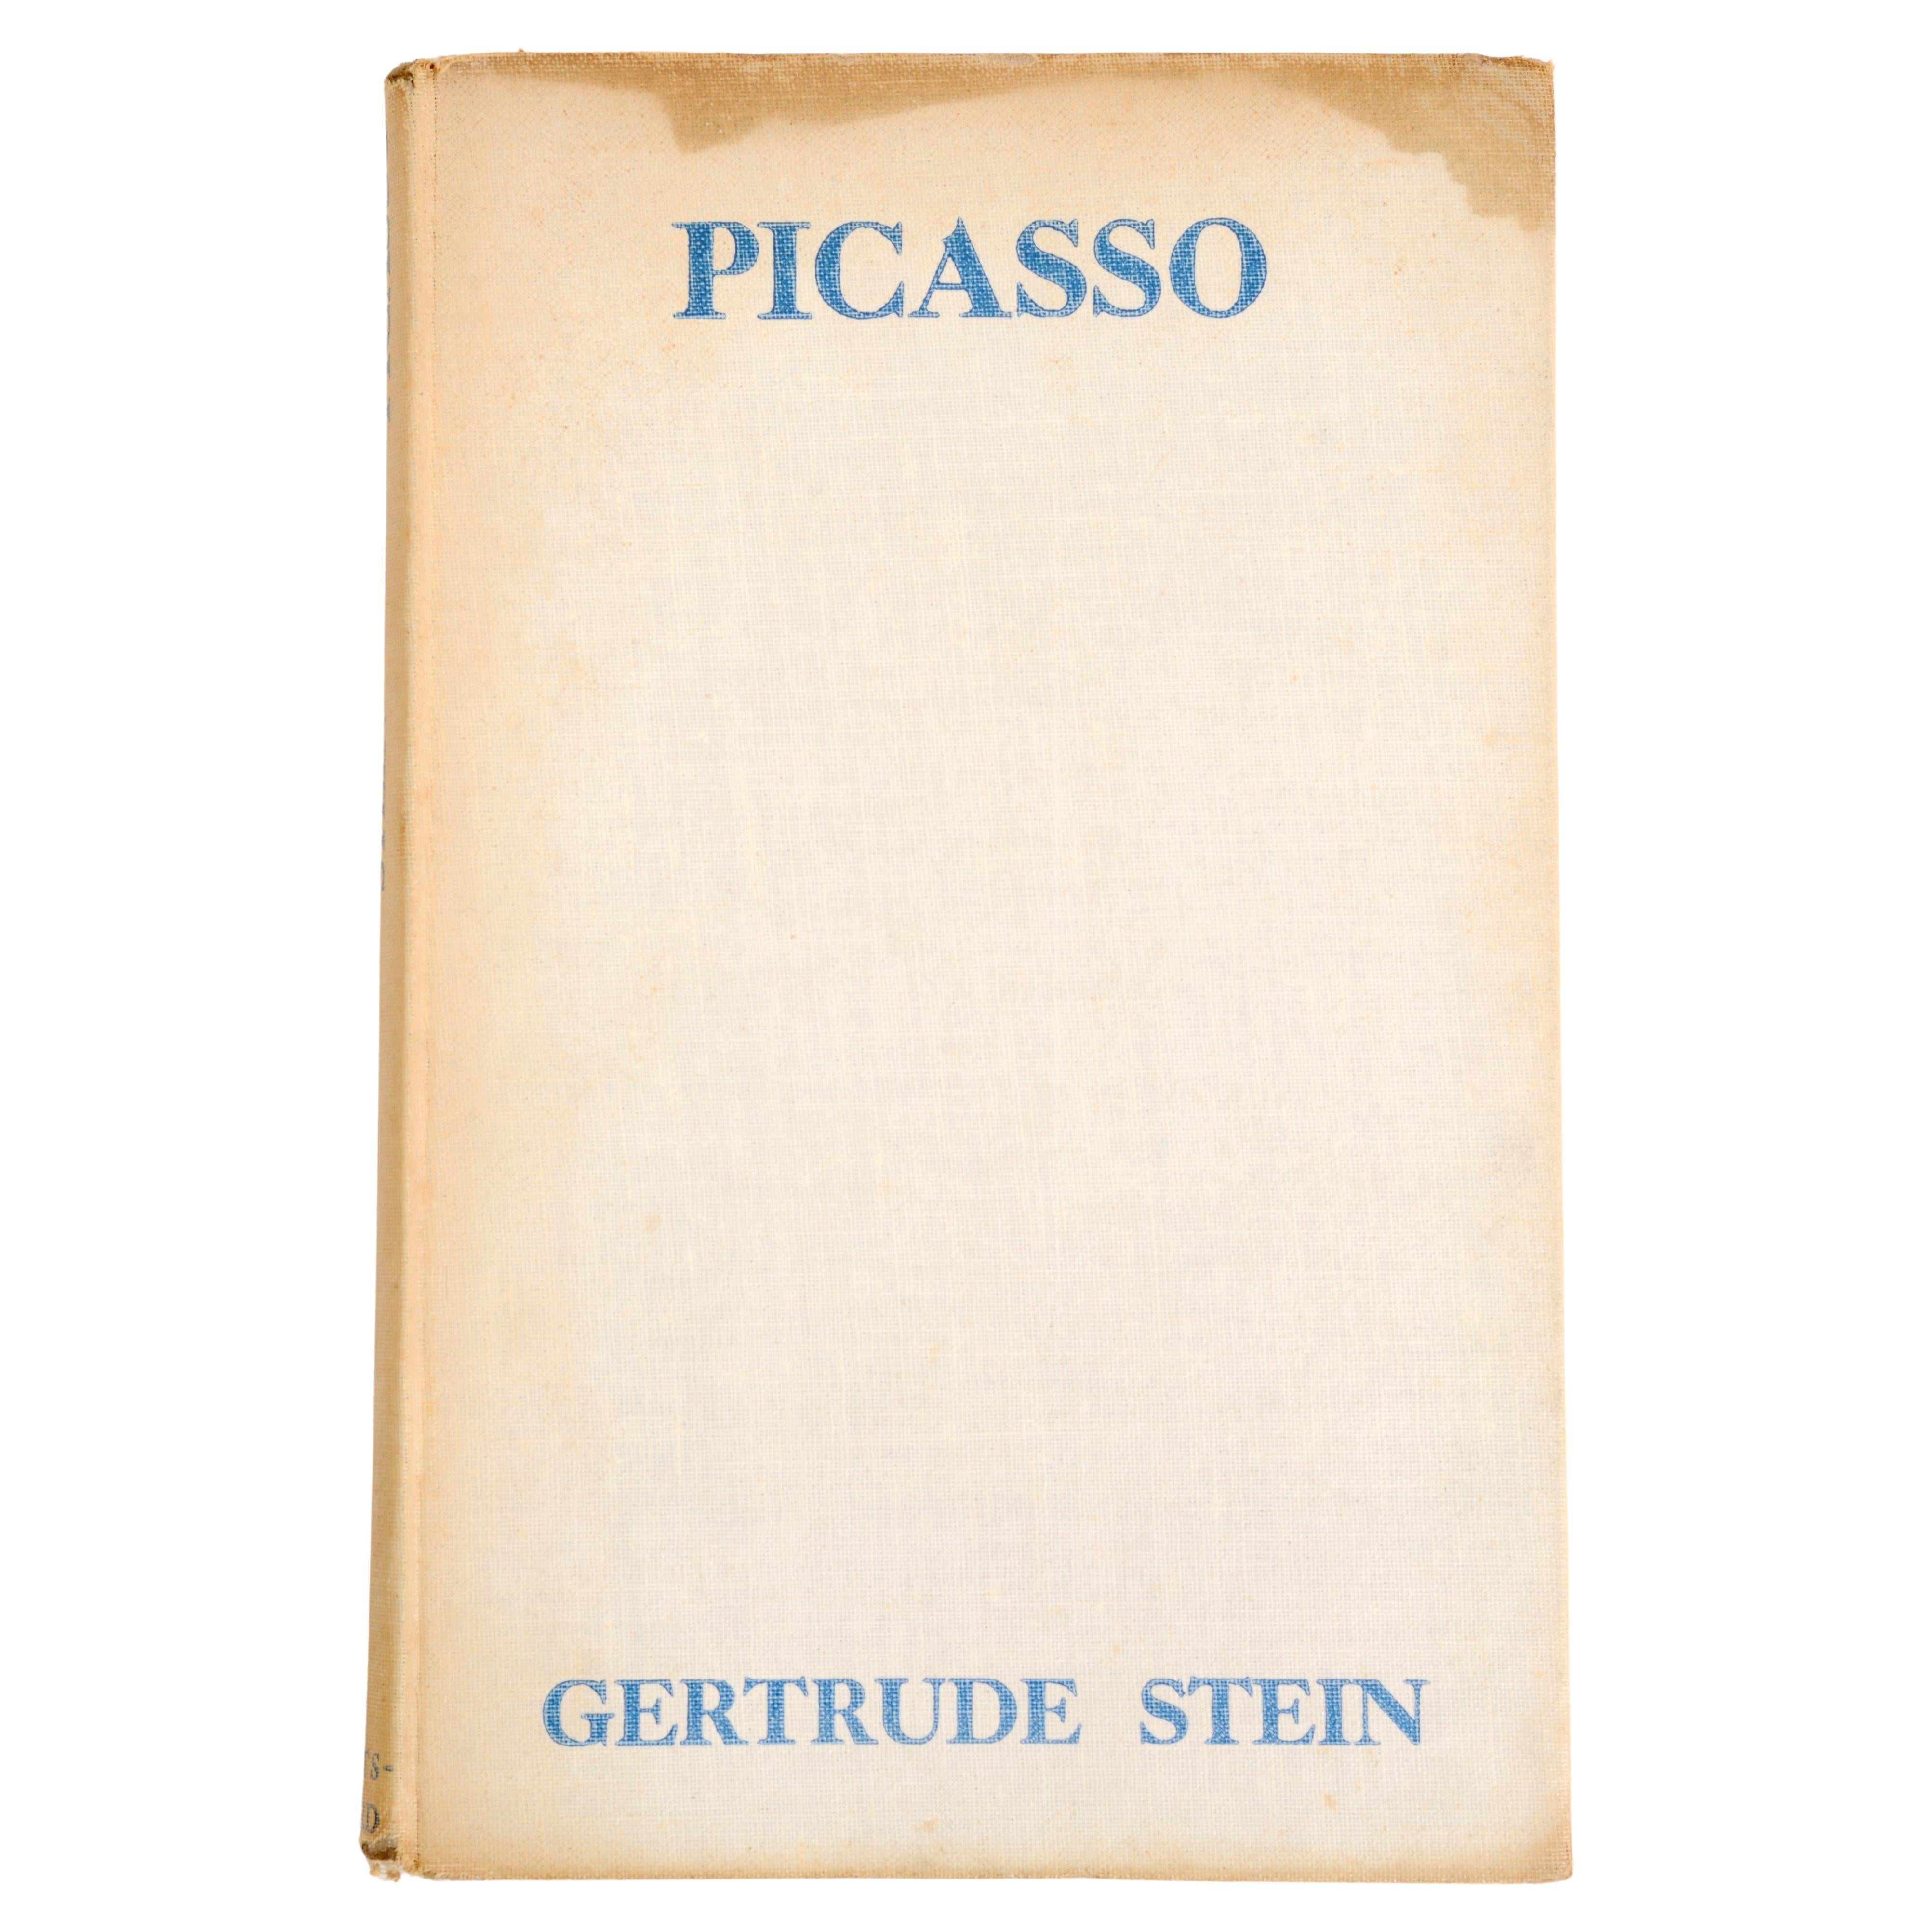 Picasso von Gertrude Stein